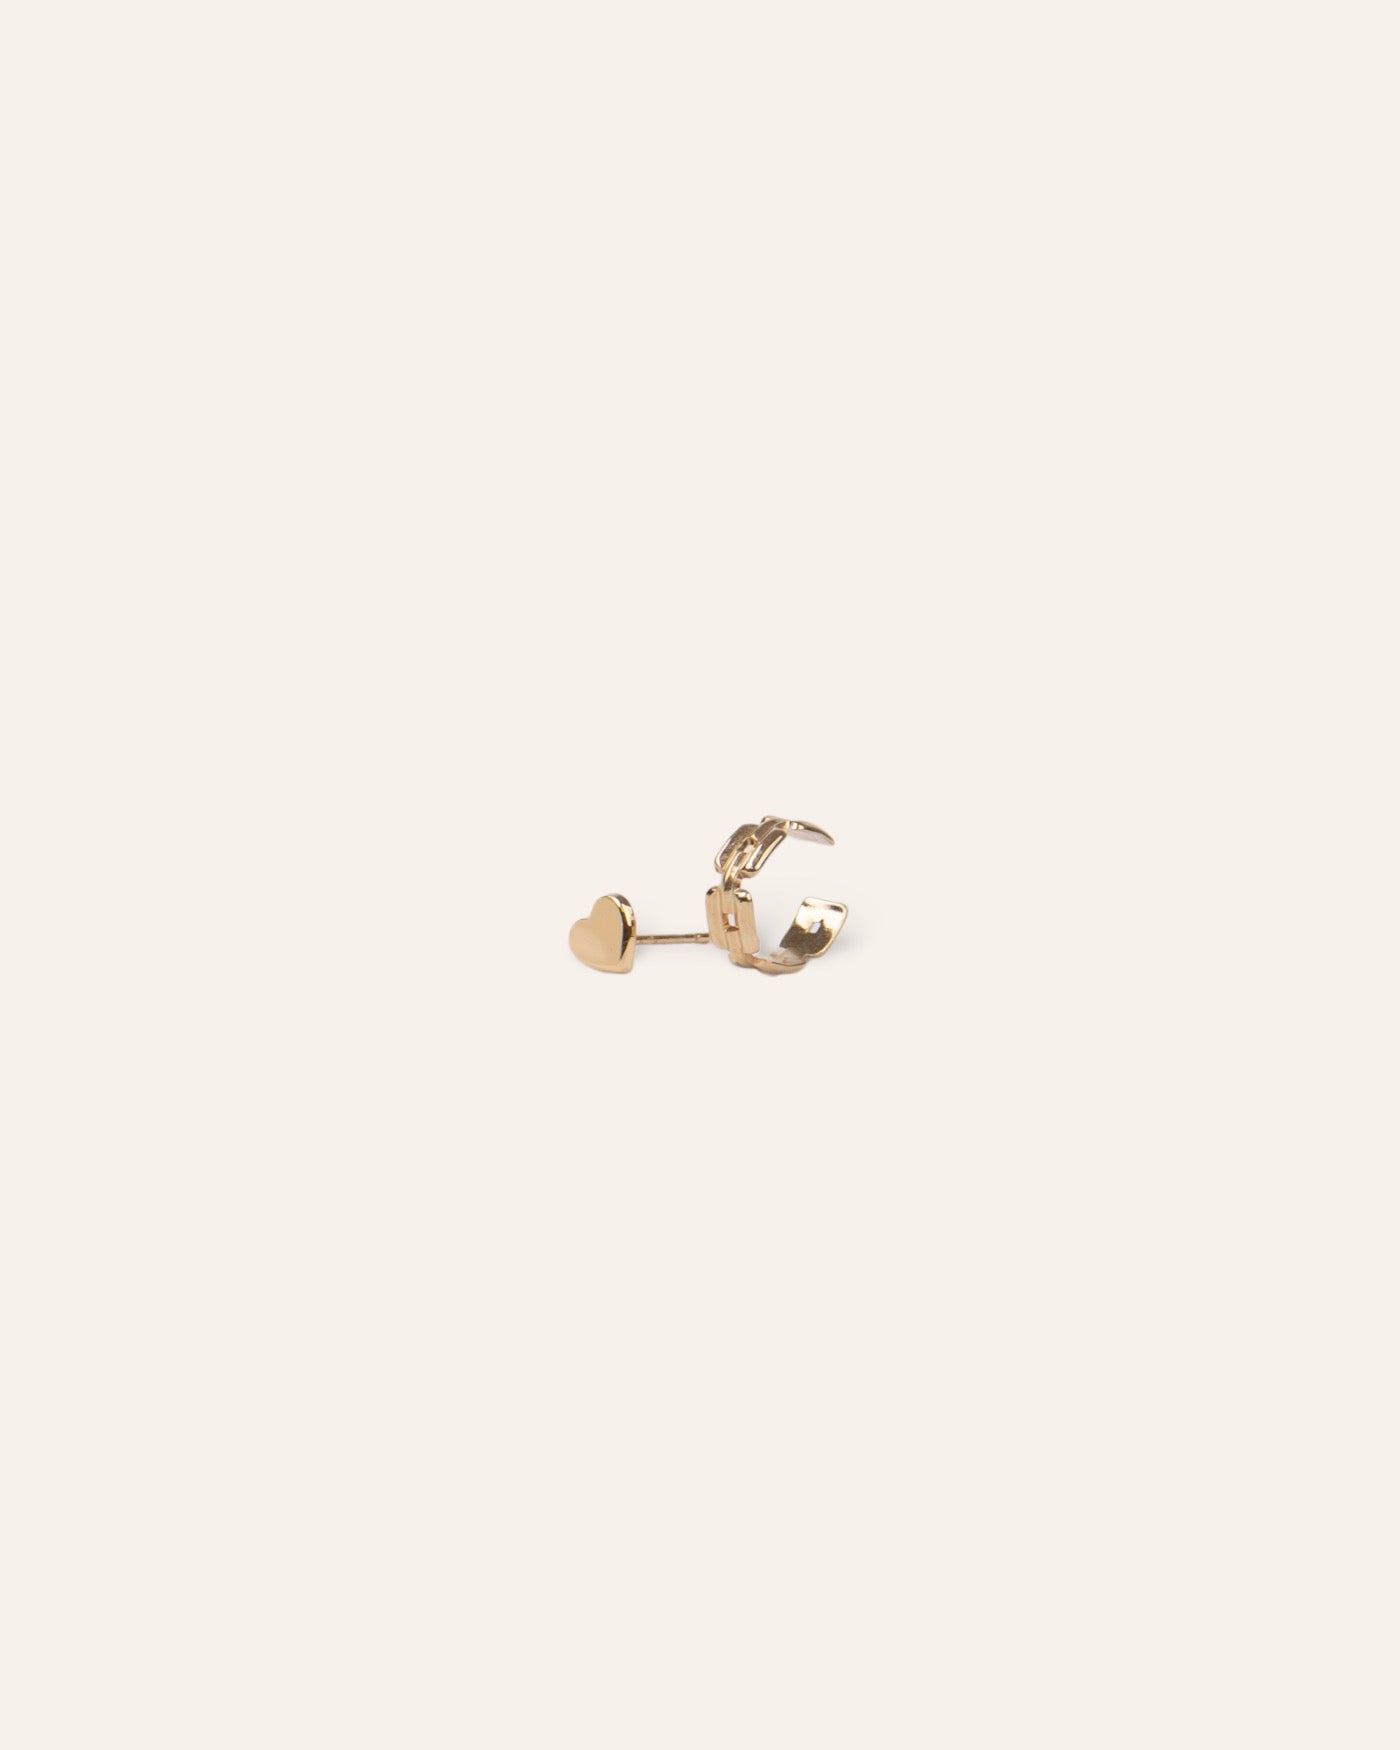 Composition de deux boucles d'oreilles, avec une boucle puce en forme de cœur, et un earcuff au design chaîne carrée en plaqué or 18 carats made in France.